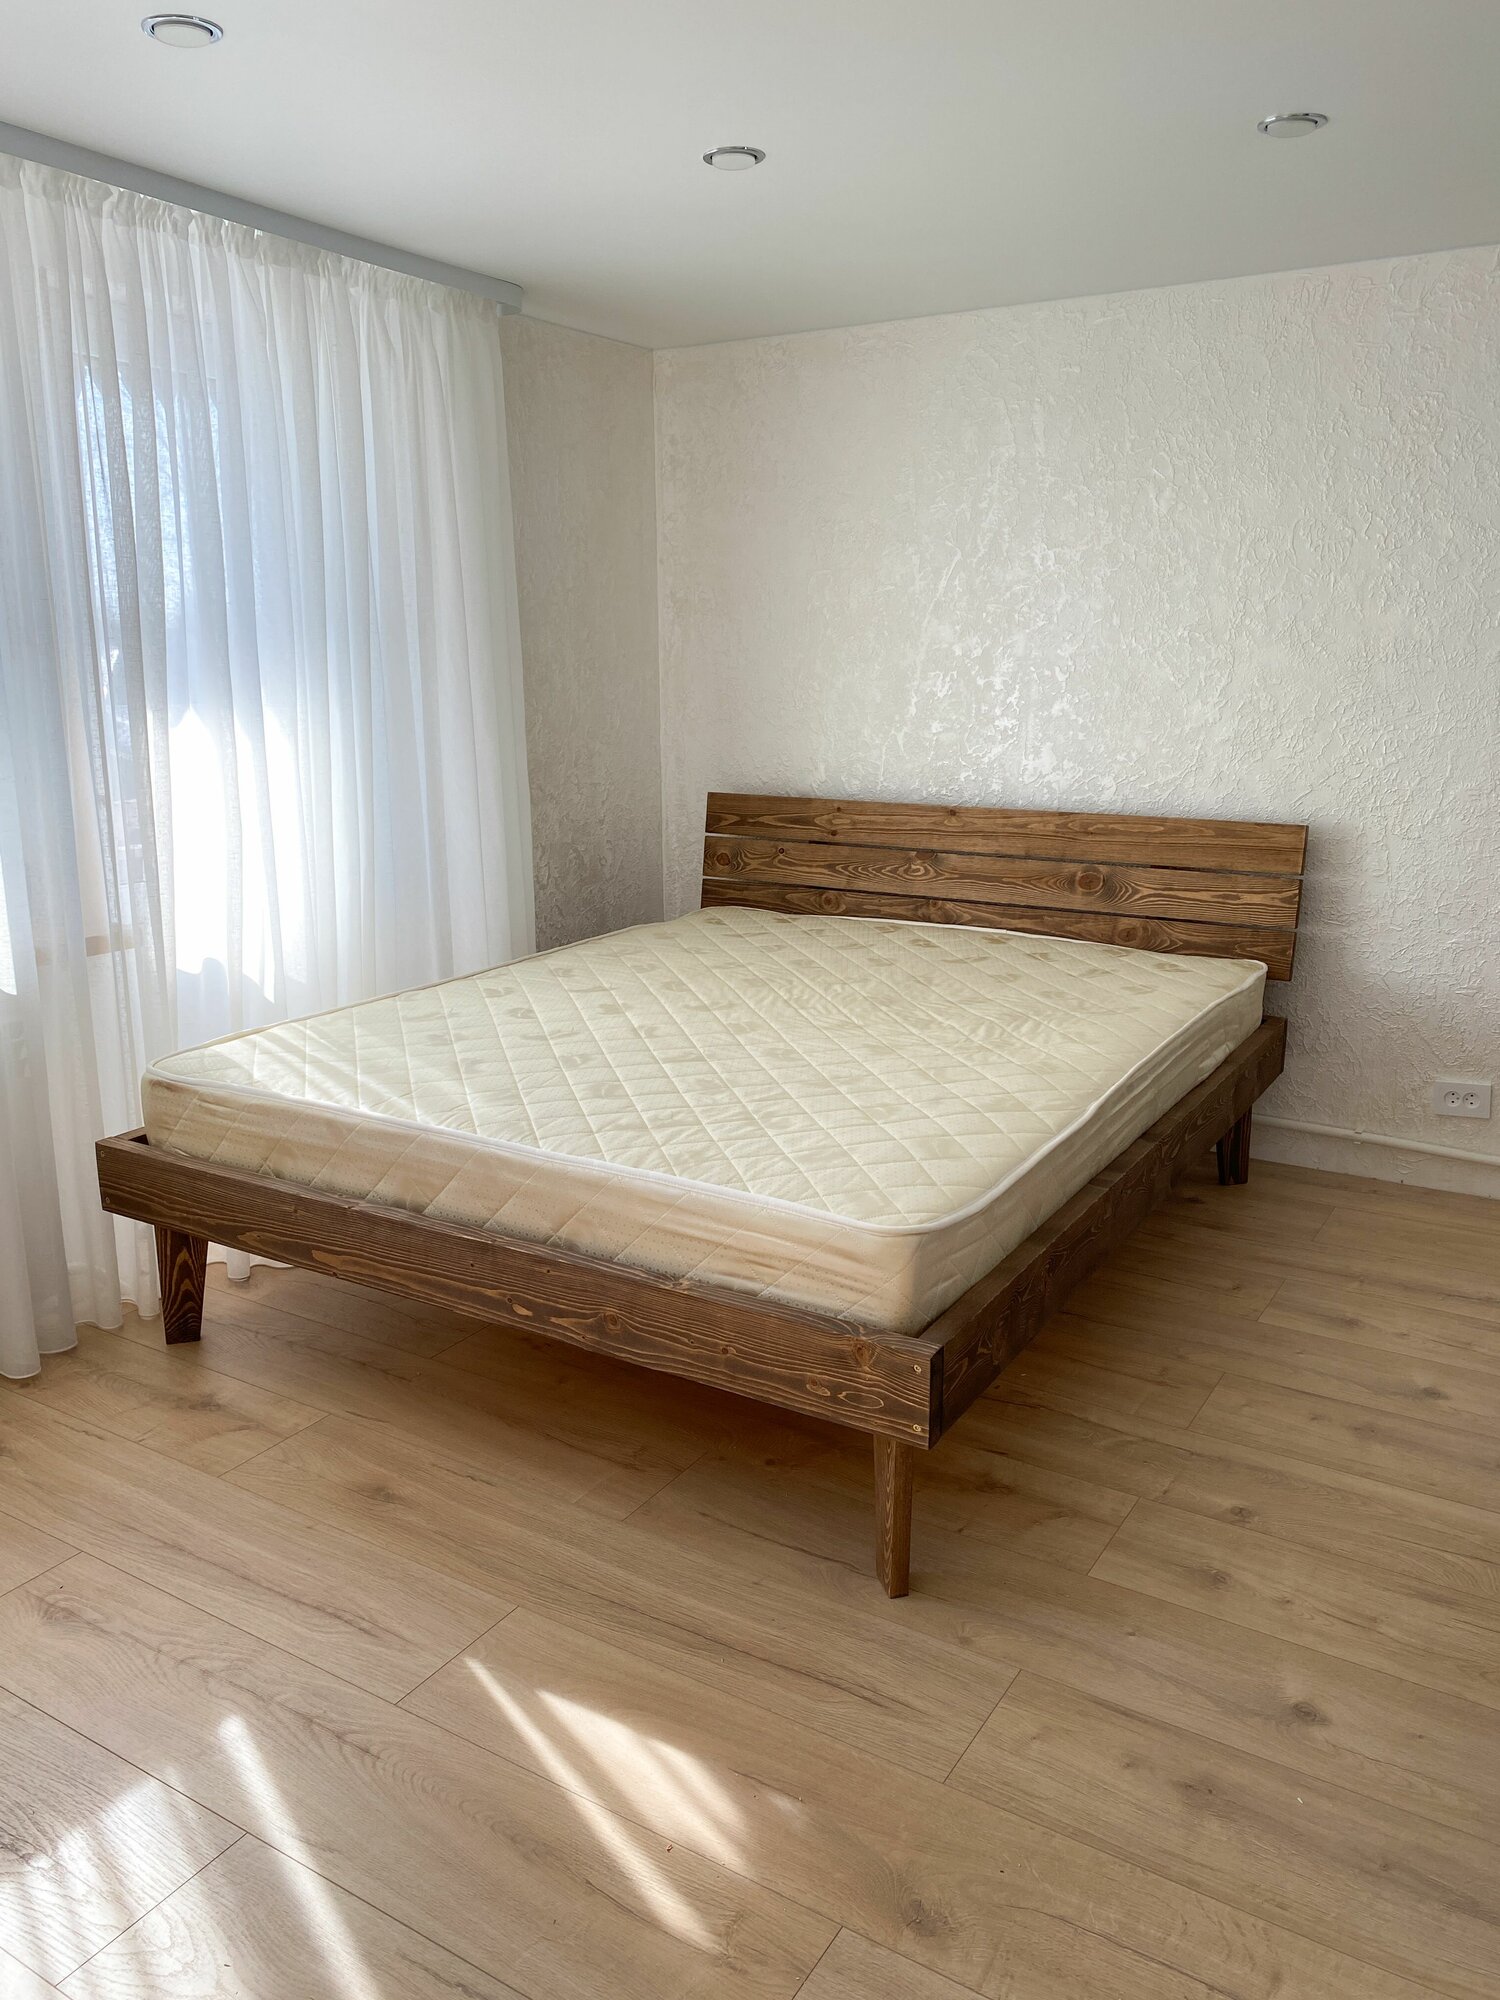 Кровать двуспальная "Венеция" кровать 160 200, кровать деревянная